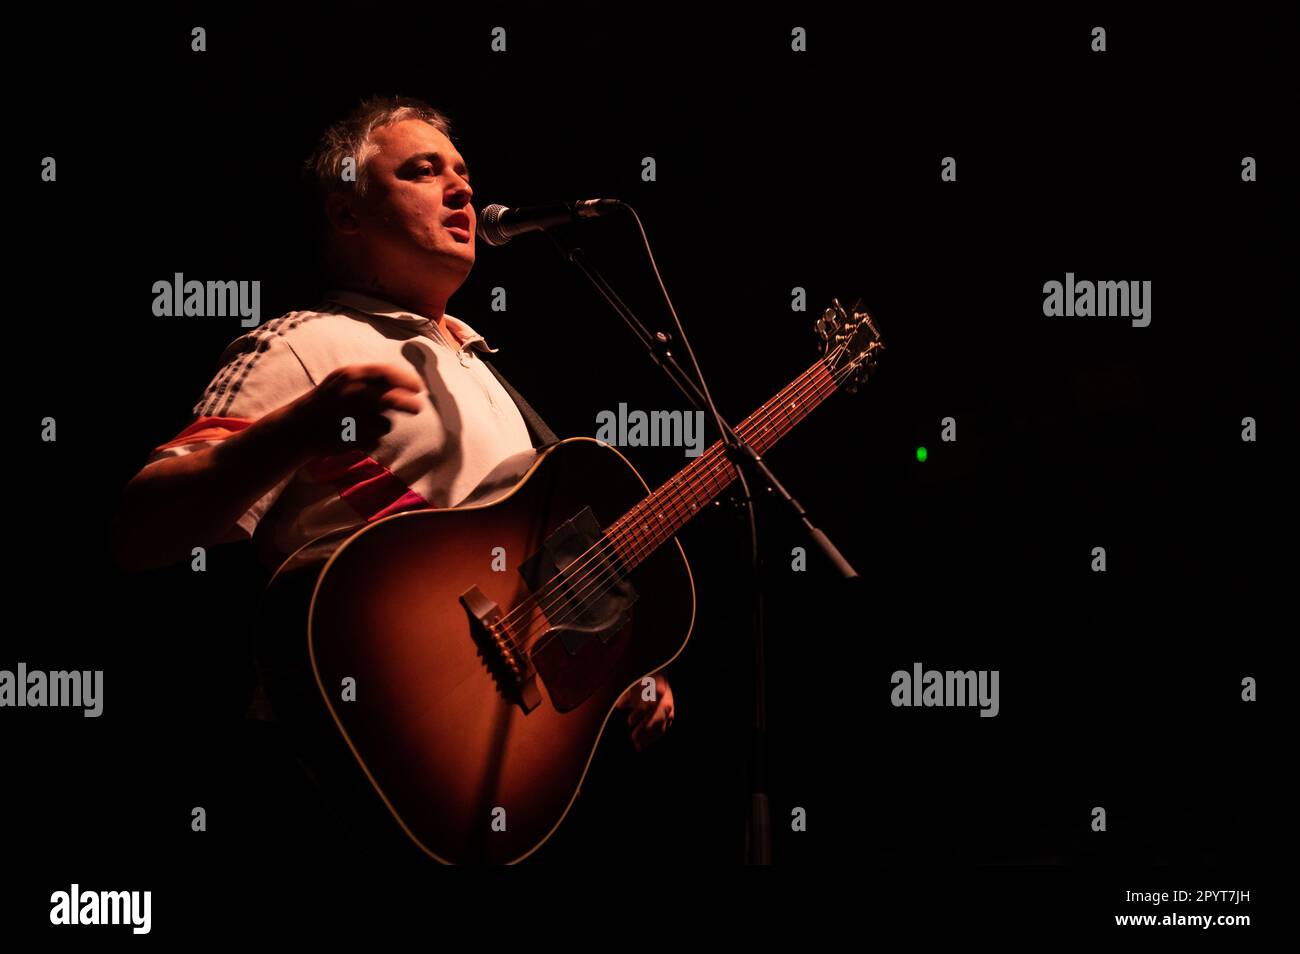 Birmingham, UK.04th maggio 2023. Peter Doherty sul palco alla sua esposizione acustica solista al O2 Academy Institute. Cristina Massei/Alamy Live News Foto Stock